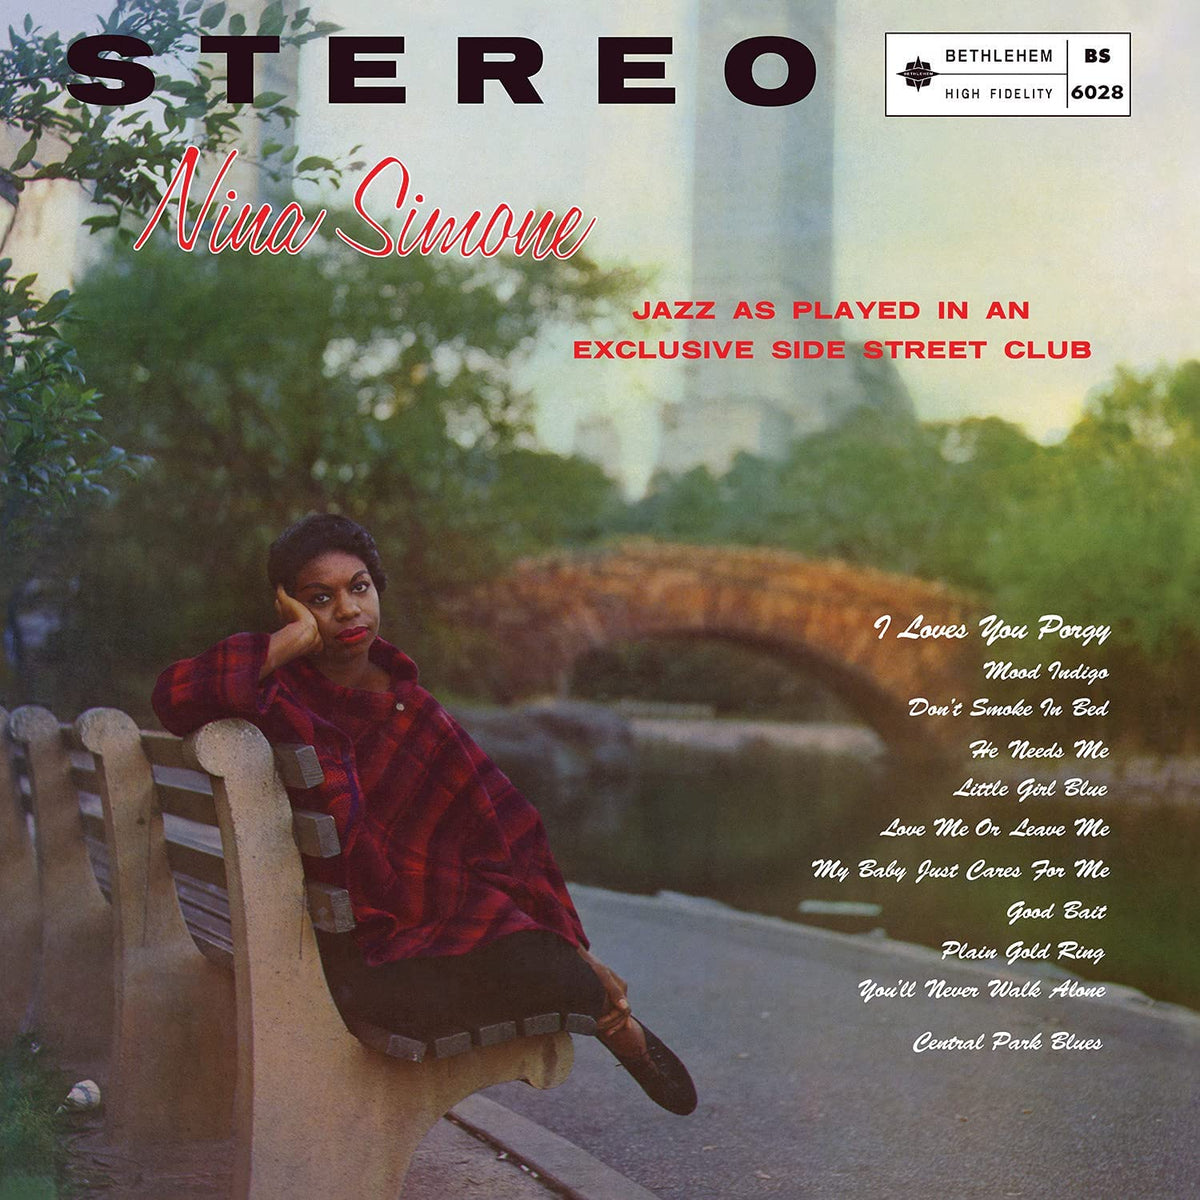 Little Girl Blue 2021 - Stereo Remaster - Nina Simone [CLEAR BLUE VINYL]